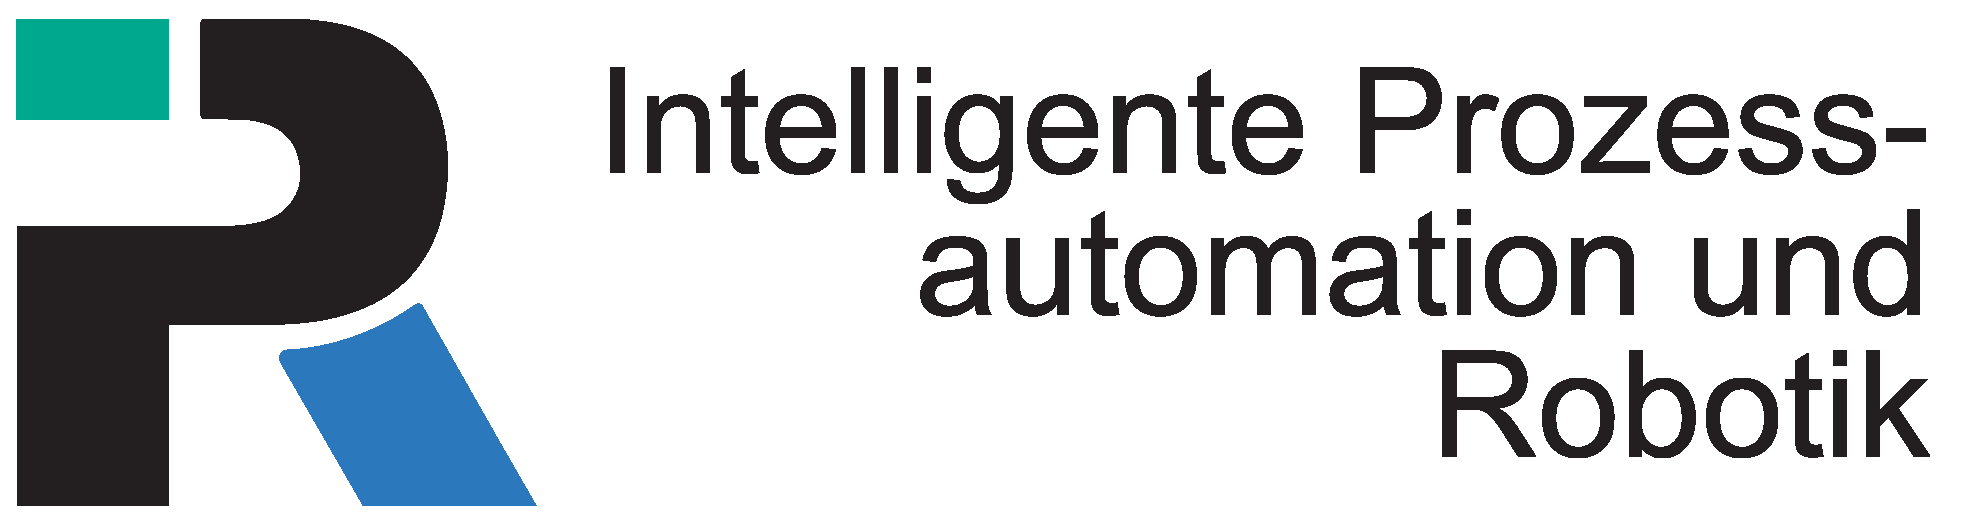 Institut für Anthropomatik & Robotik (IAR), Intelligente Prozessautomation und Robotik (IPR)